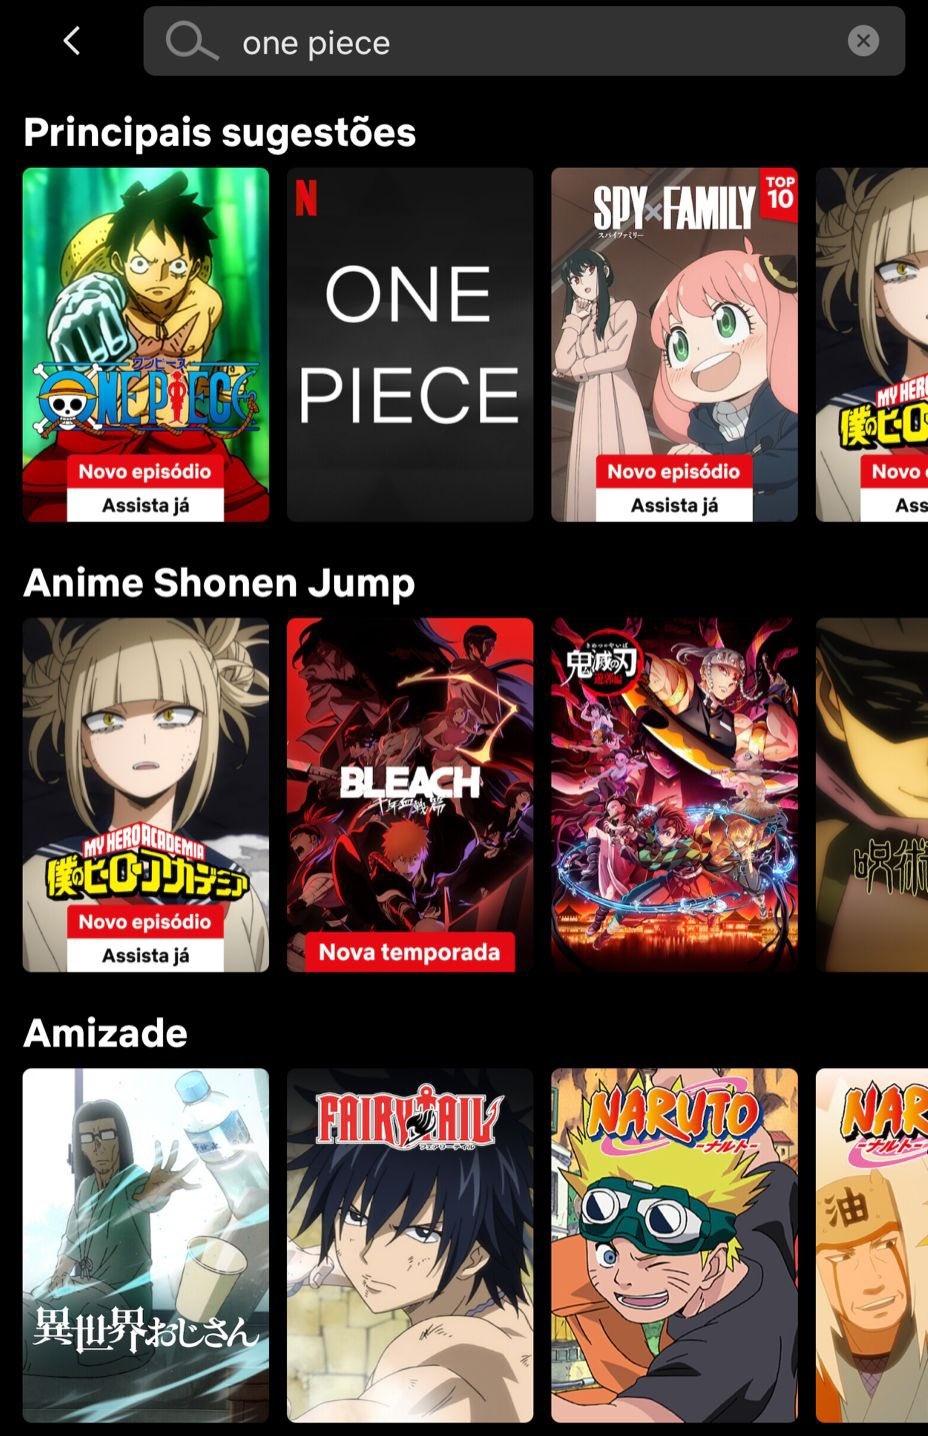 One Piece News on X: Uma pessoa me mandou algumas imagens da Netflix hoje  que me deixaram intrigado. Vários animes que não estão no catálogo estavam  aparecendo na Netflix dessa pessoa do